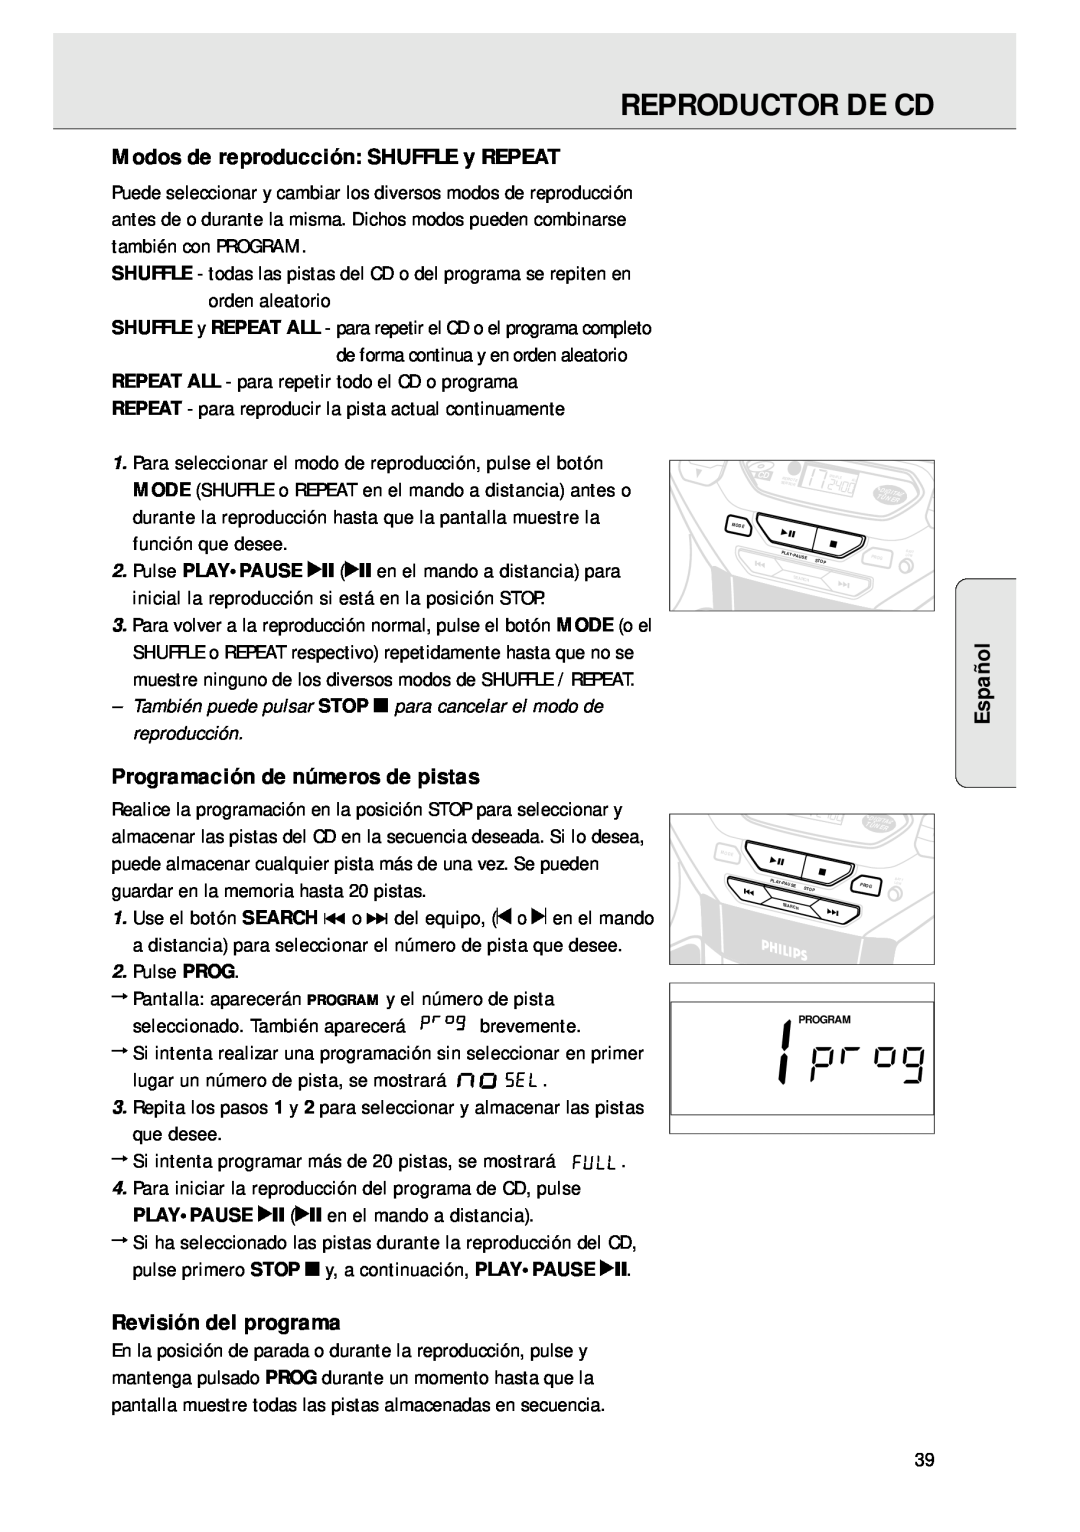 Magnavox AZ 1045 Modos de reproducción SHUFFLE y REPEAT, Programación de números de pistas, Revisión del programa, Español 